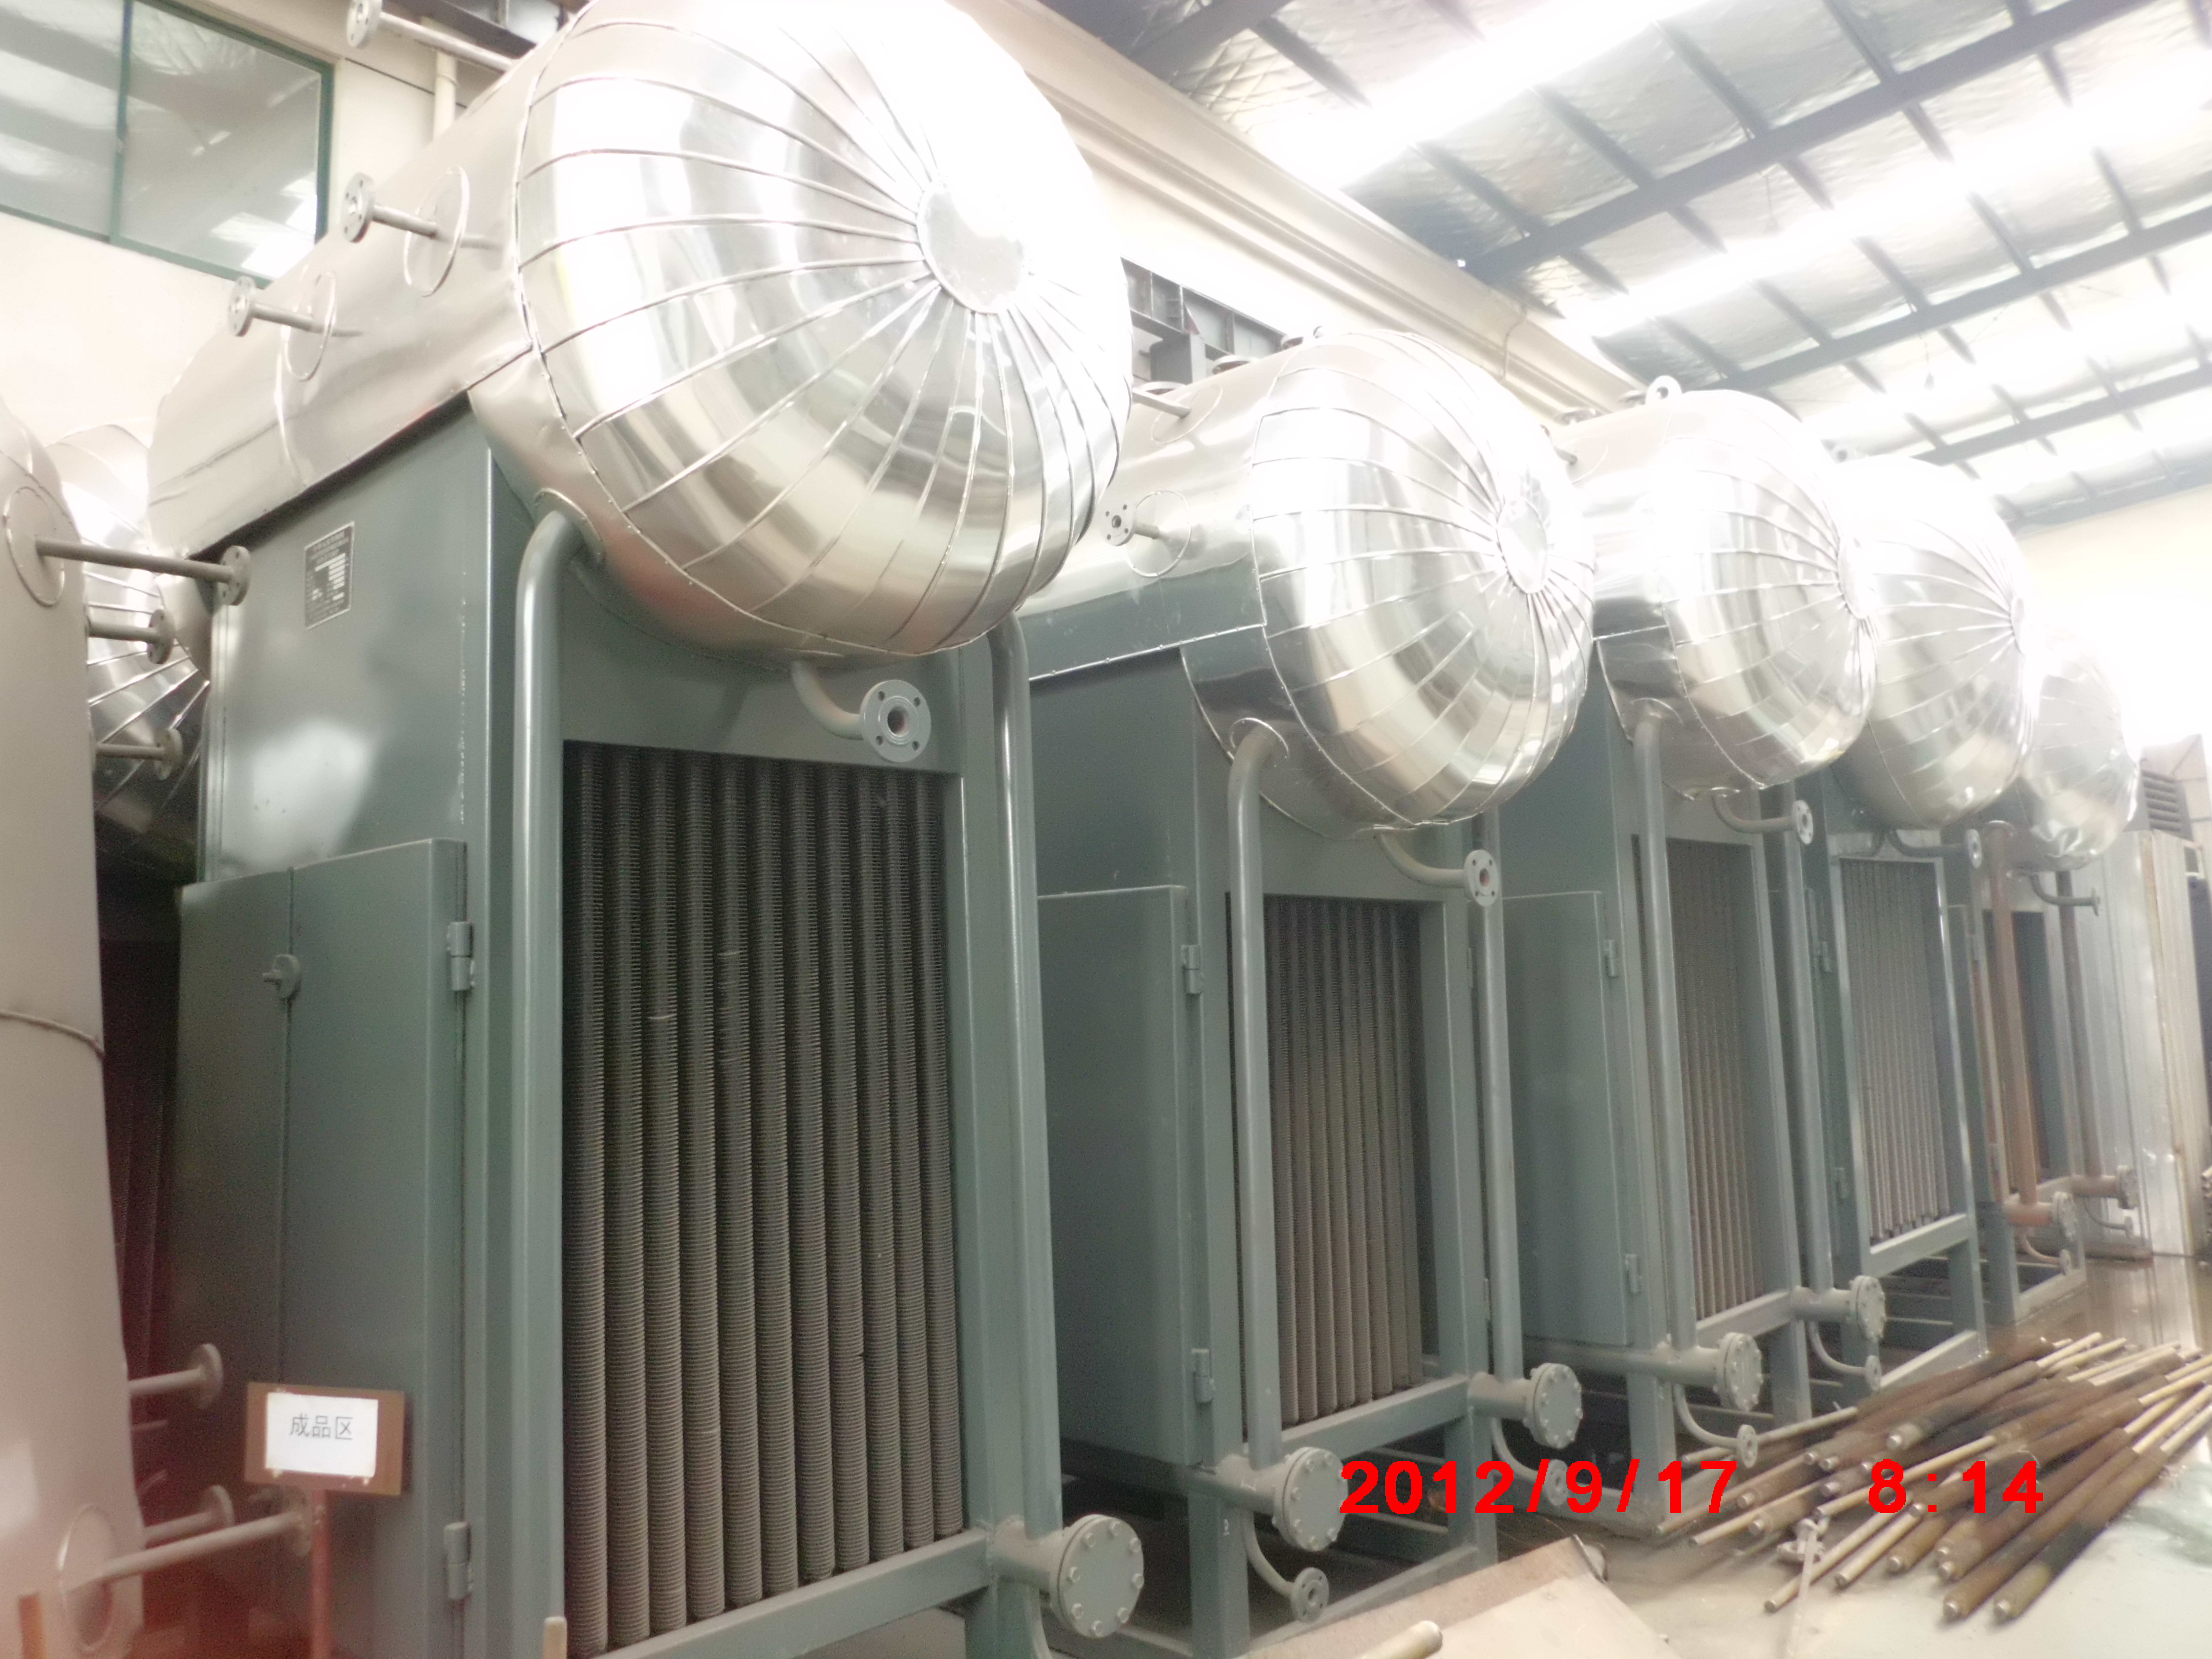  上海余热锅炉厂家 上海余热锅炉厂家、上海烟气余热回收、浙江余热锅炉